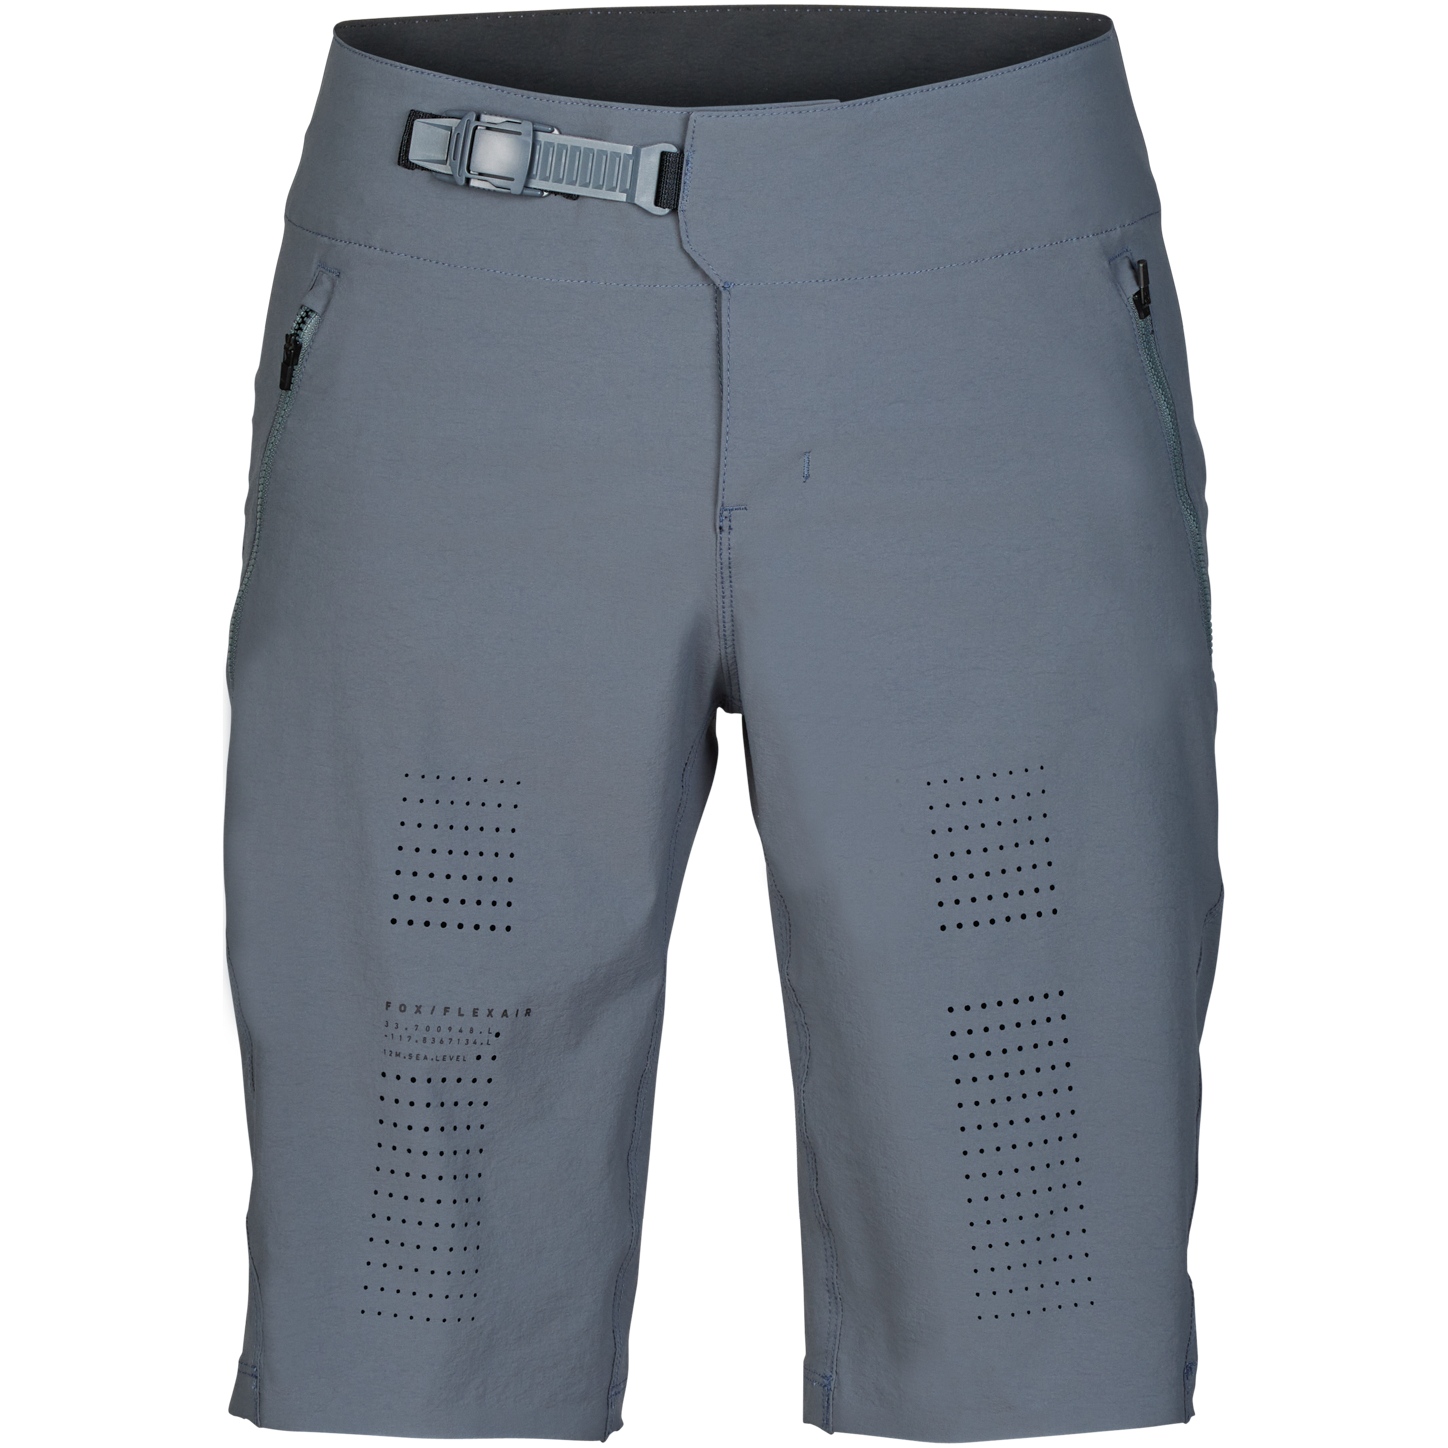 Produktbild von FOX Flexair MTB Shorts Herren - graphite